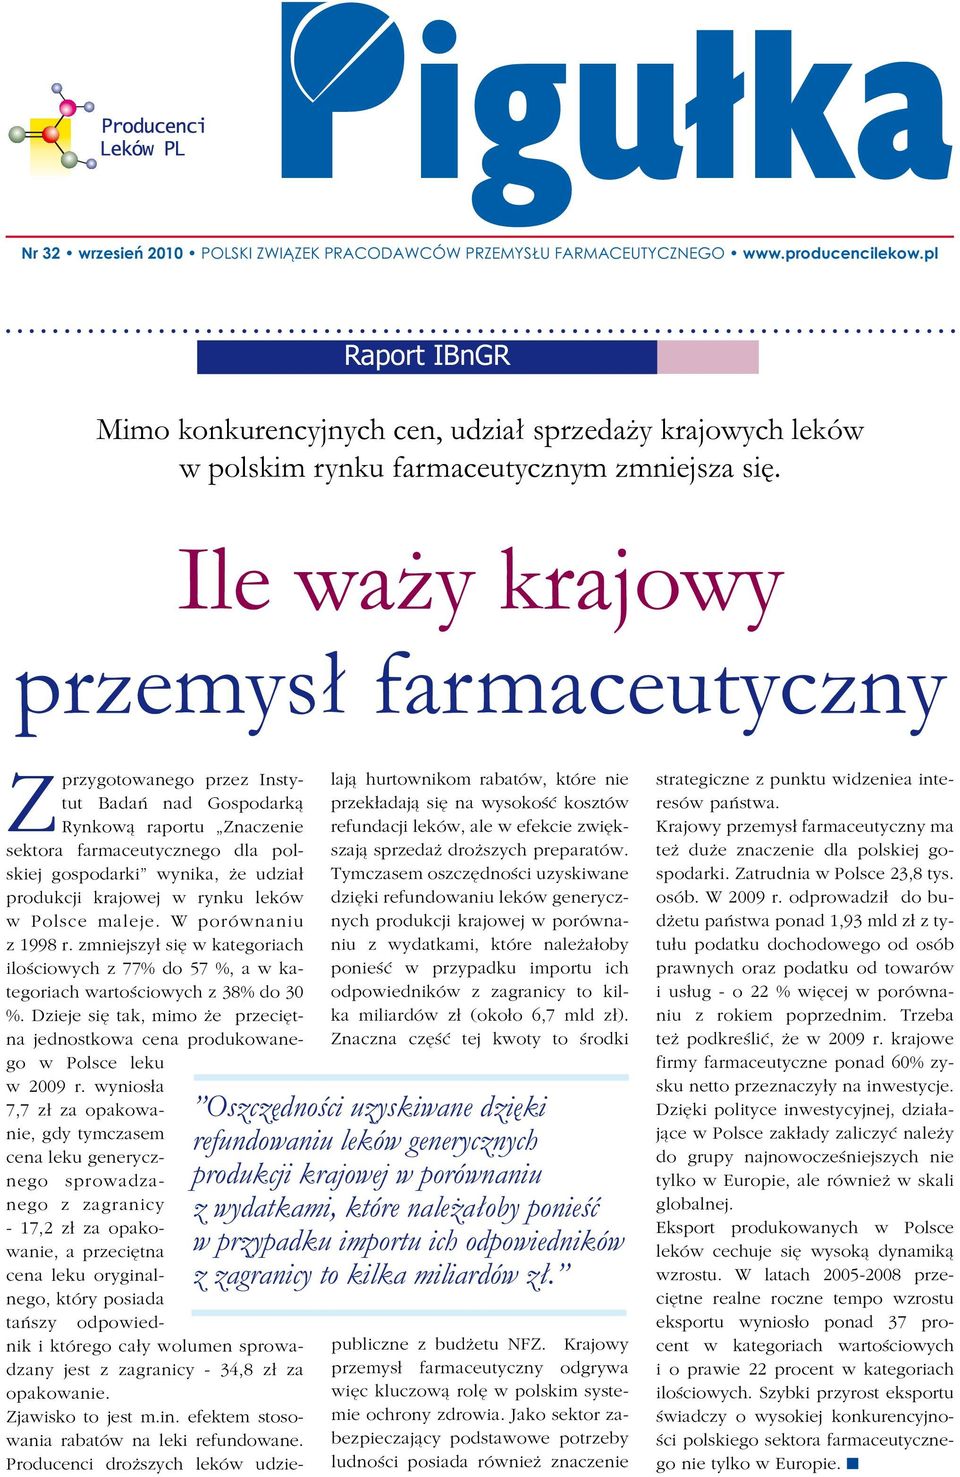 Ile waży krajowy przemysł farmaceutyczny Zprzygotowanego przez Instytut Badań nad Gospodarką Rynkową raportu Znaczenie sektora farmaceutycznego dla polskiej gospodarki wynika, że udział produkcji